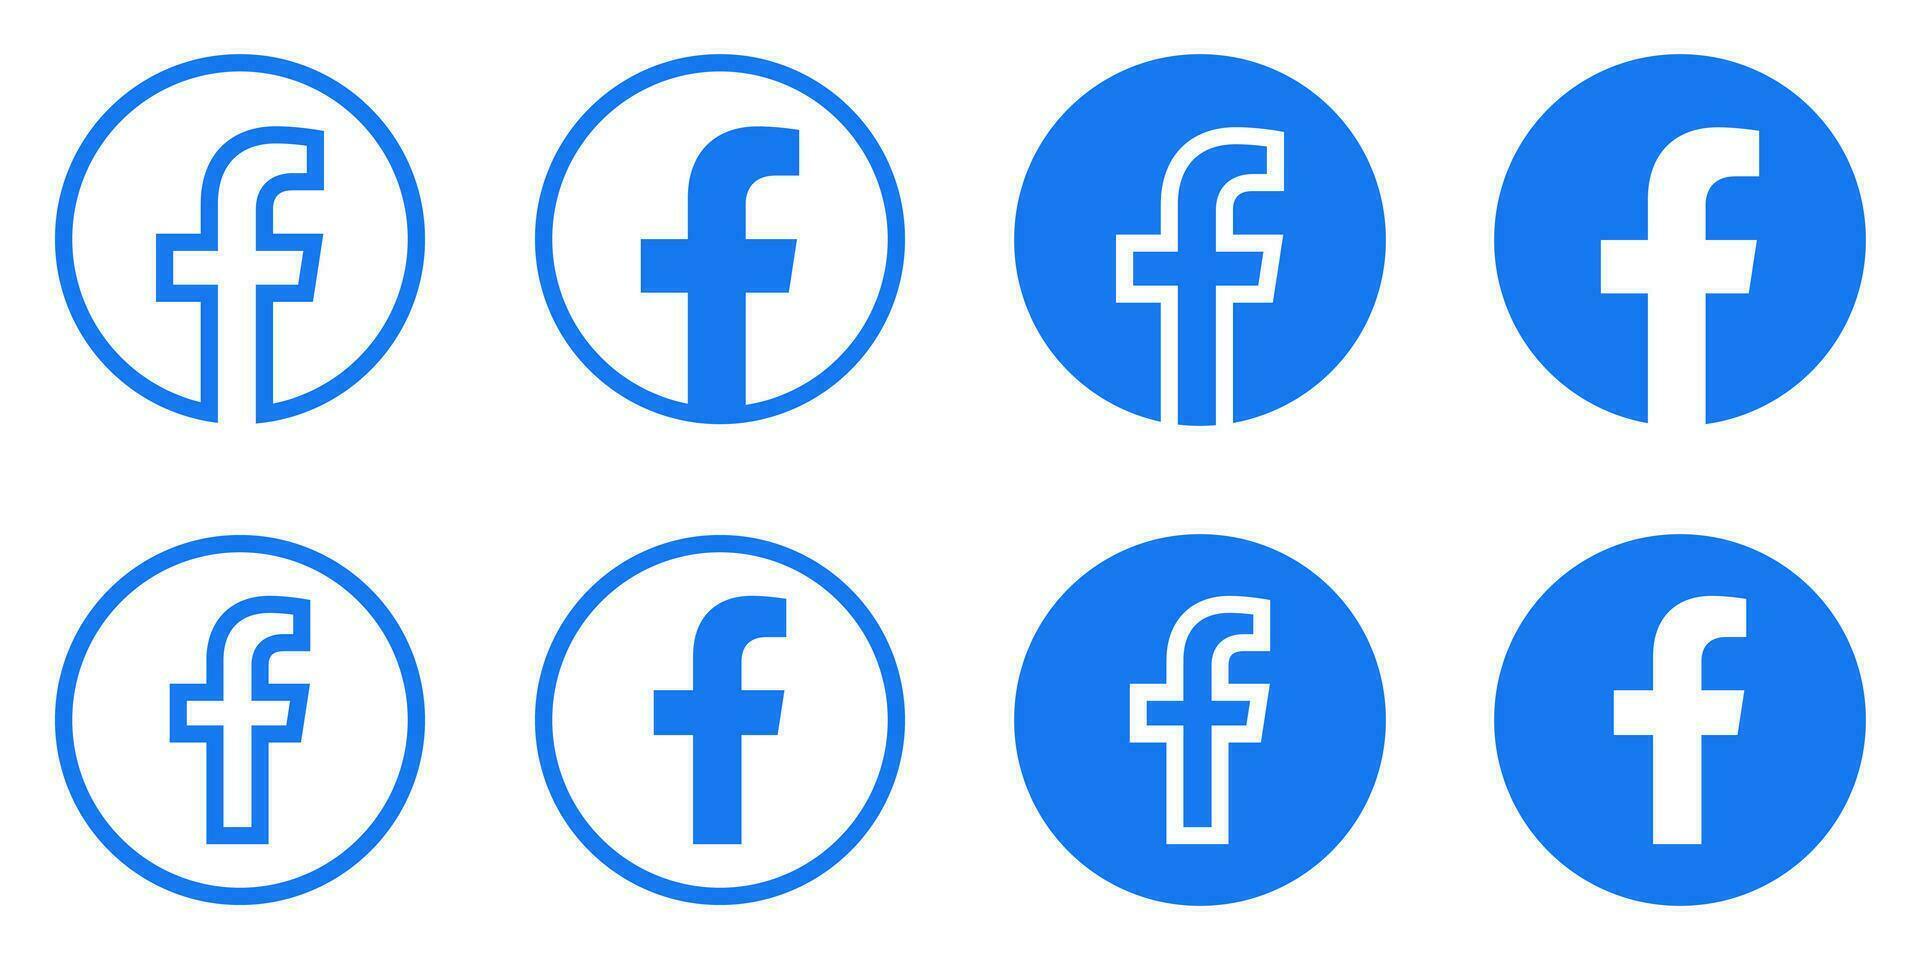 Facebook Logo - - Vektor einstellen Sammlung - - Original neueste Blau Farbe - - isoliert. f Symbol zum Netz Buchseite, Handy, Mobiltelefon App oder drucken Materialien.